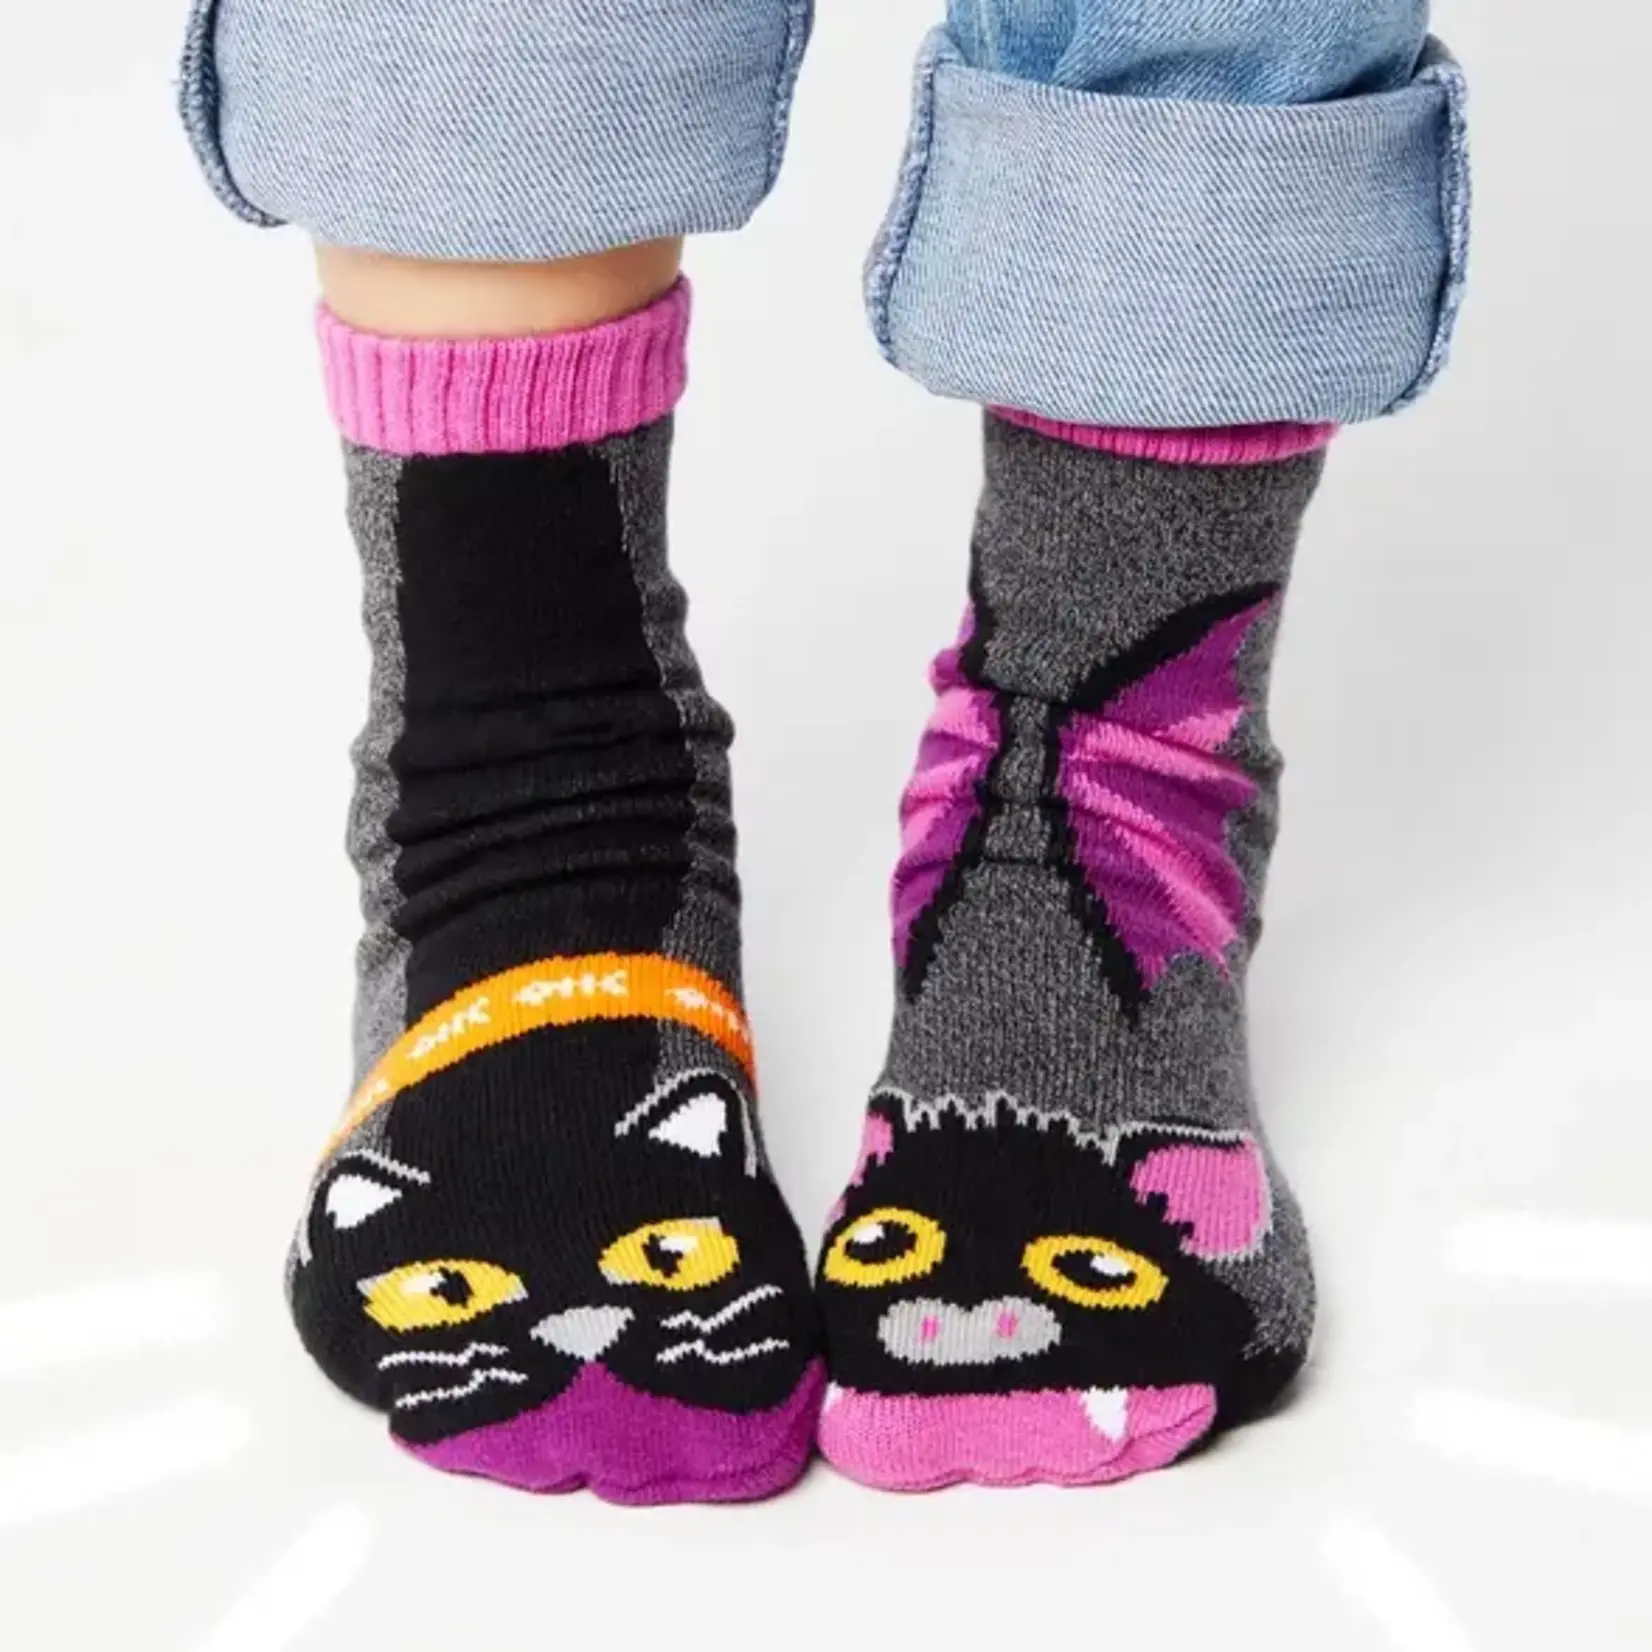 Pals Socks - Halloween Bat & Black Cat, Ages 9-12